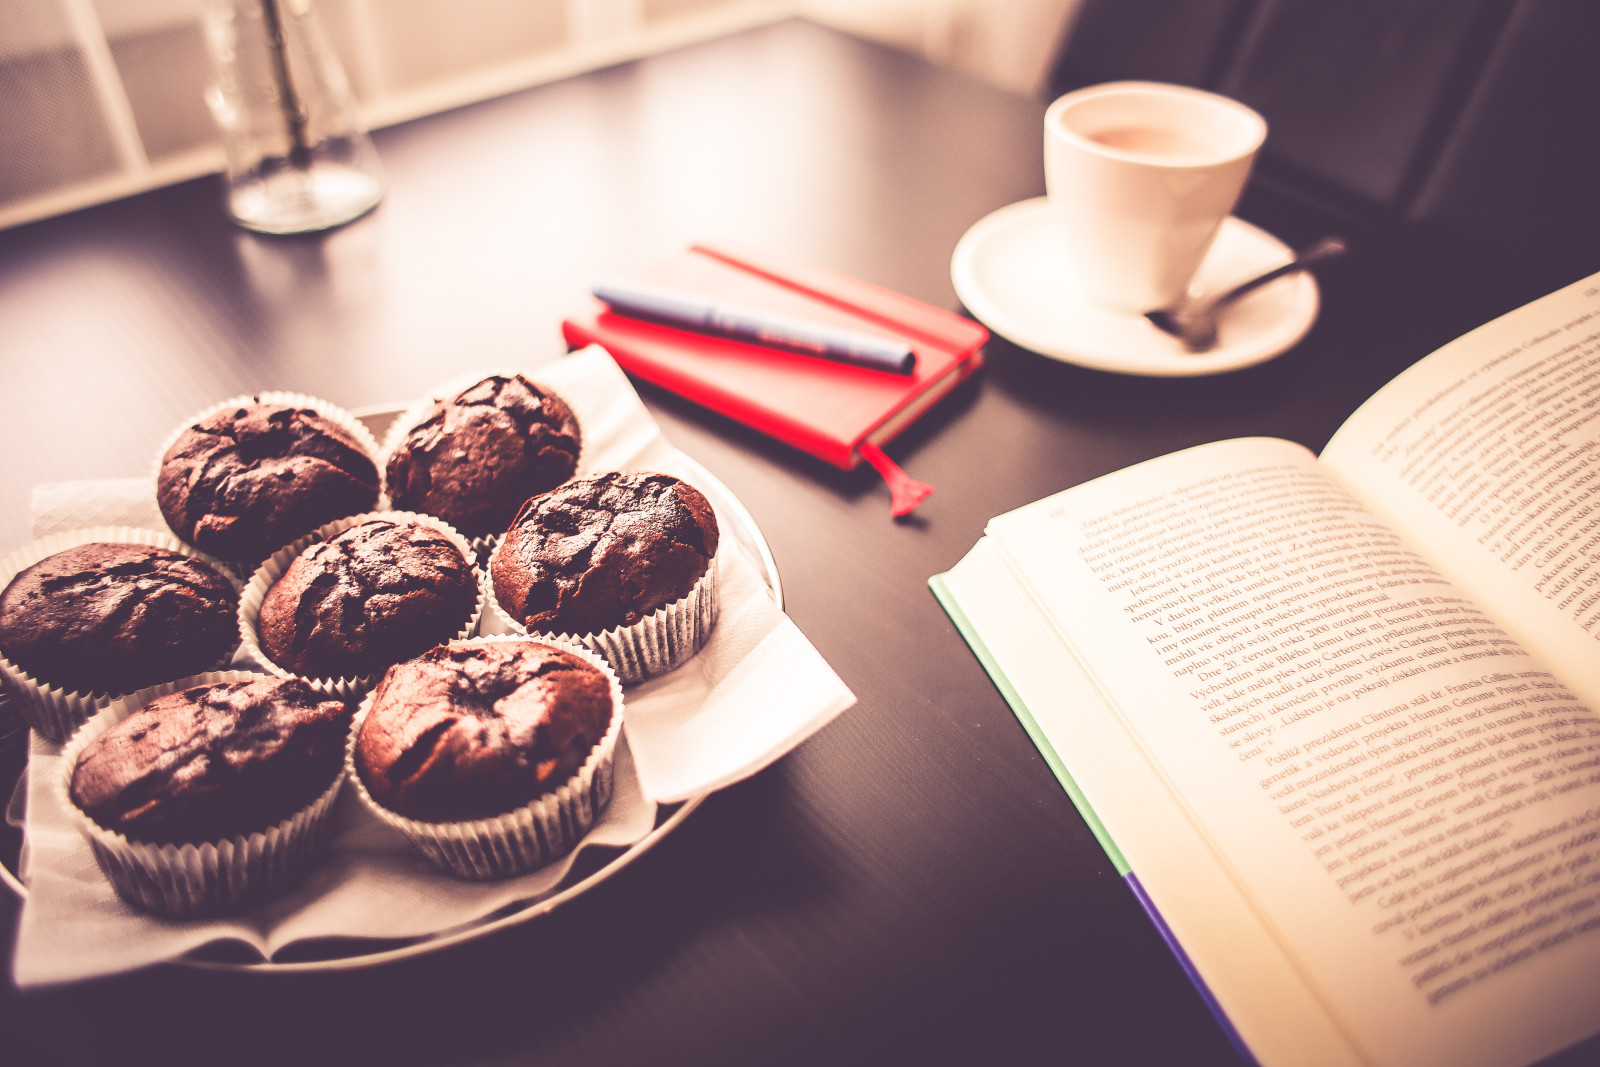 เหยือก, อาหารเช้า, หนังสือ, เค้ก, ถ้วย, คัพเค้ก